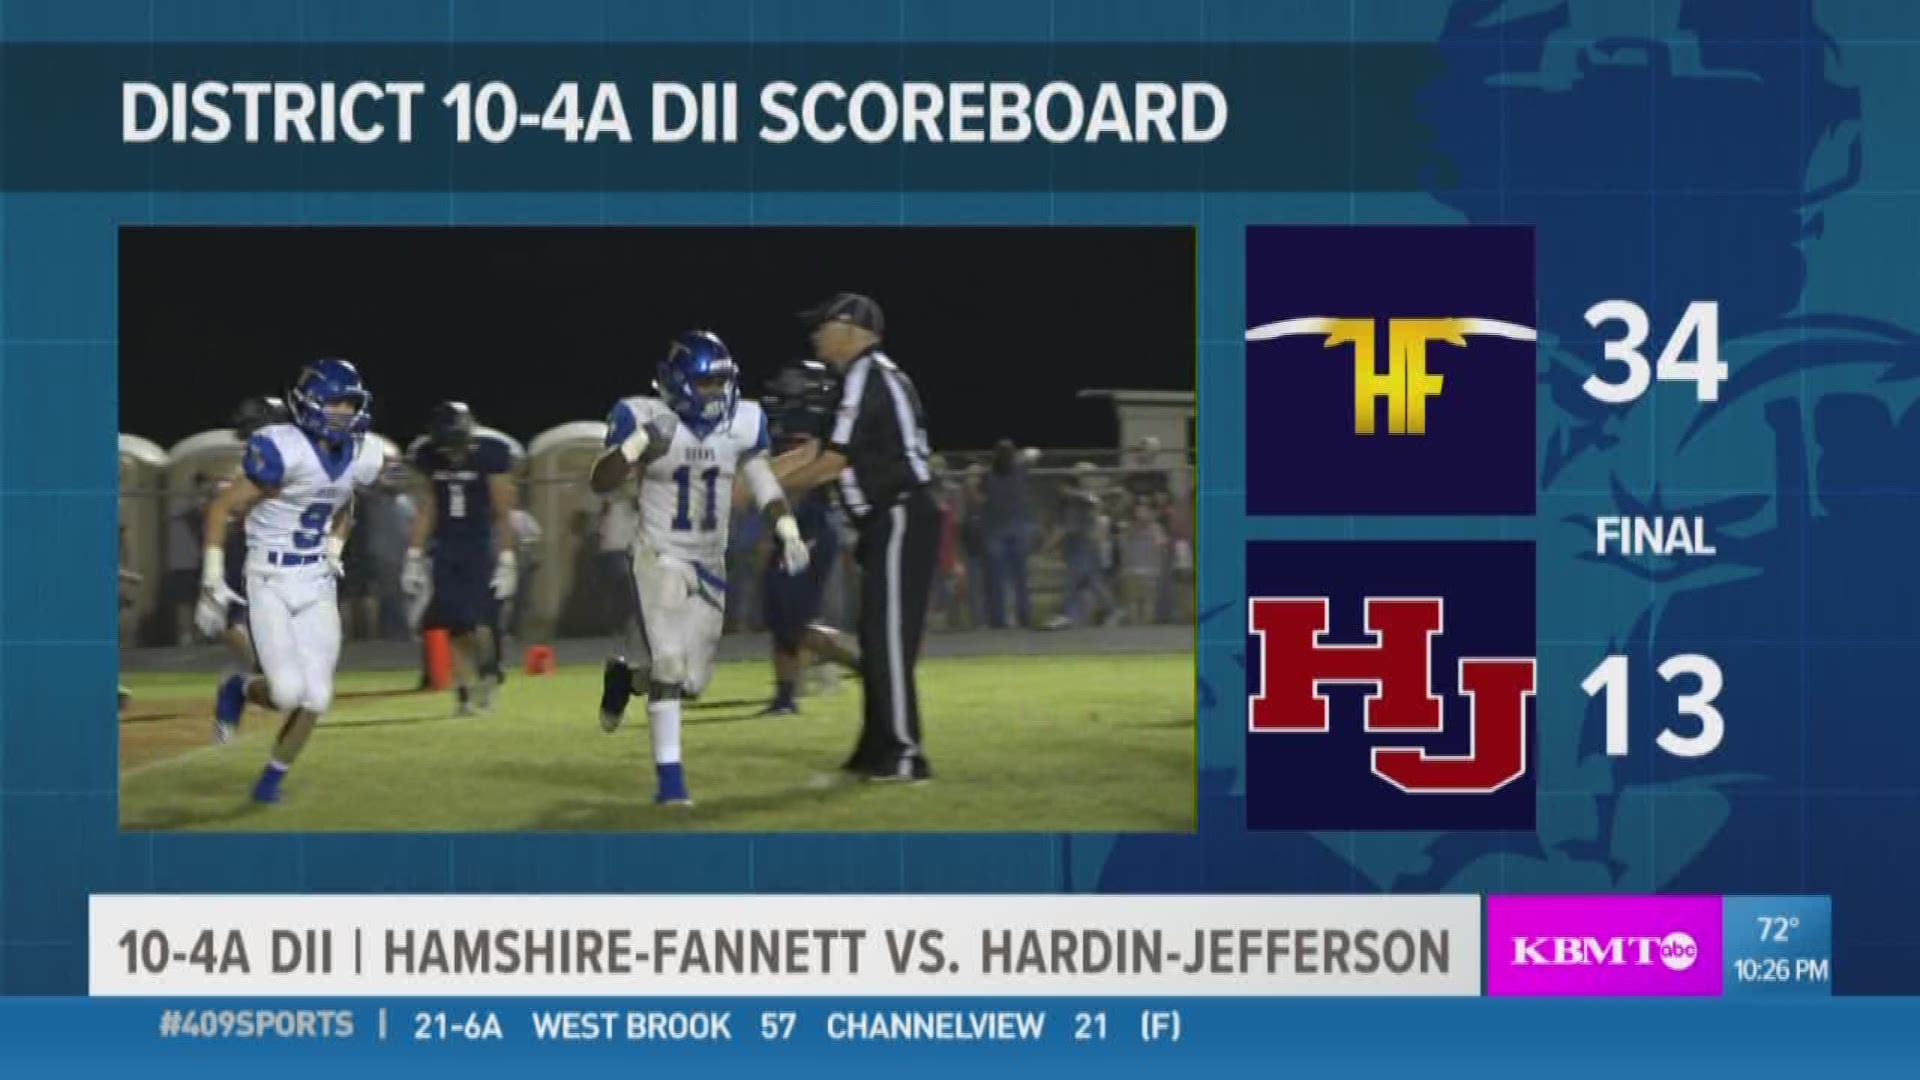 WEEK 7: Hamshire-Fannett High School takes down Hardin Jefferson 34 - 13